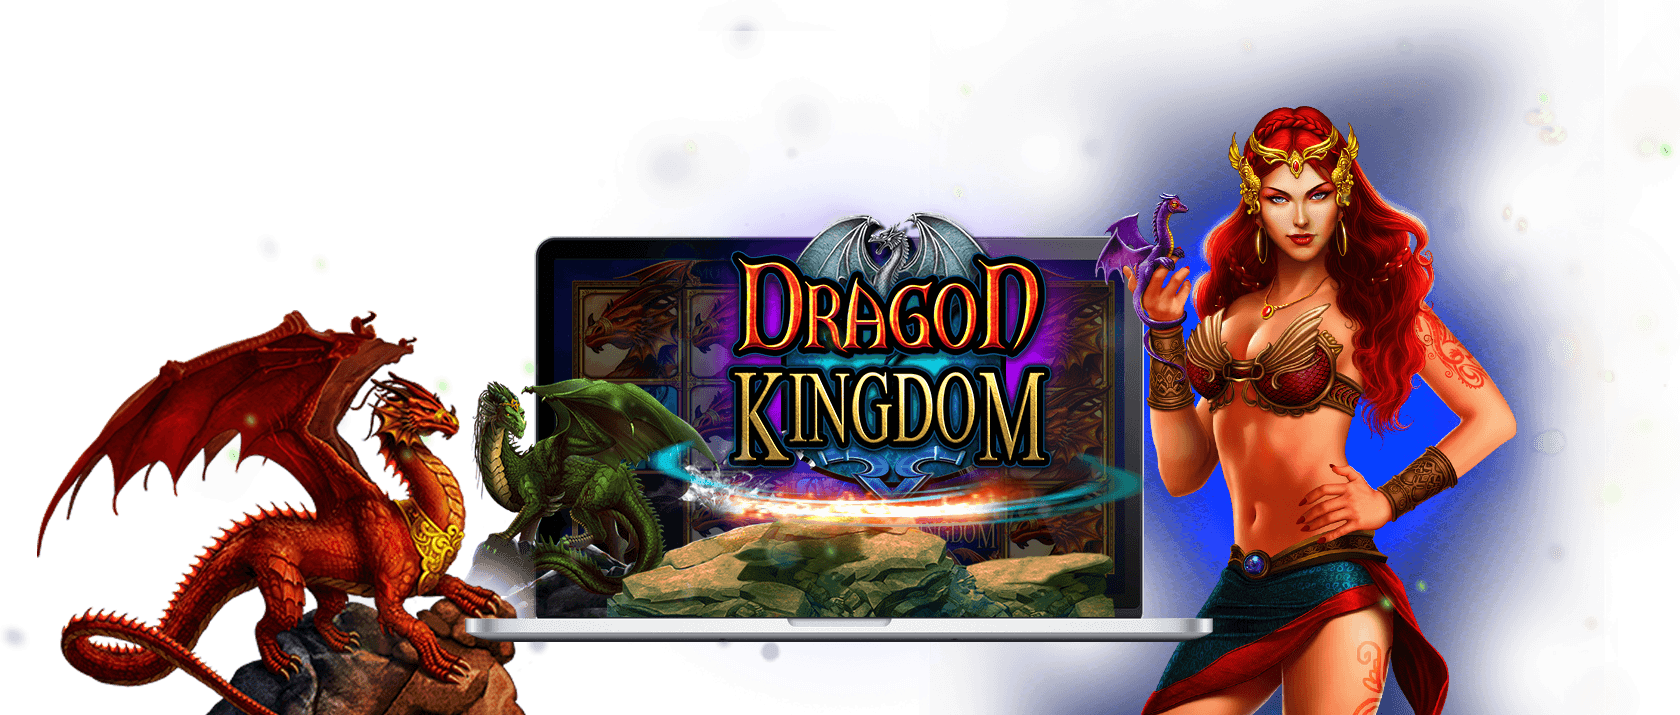 Dragon Kingdom Games